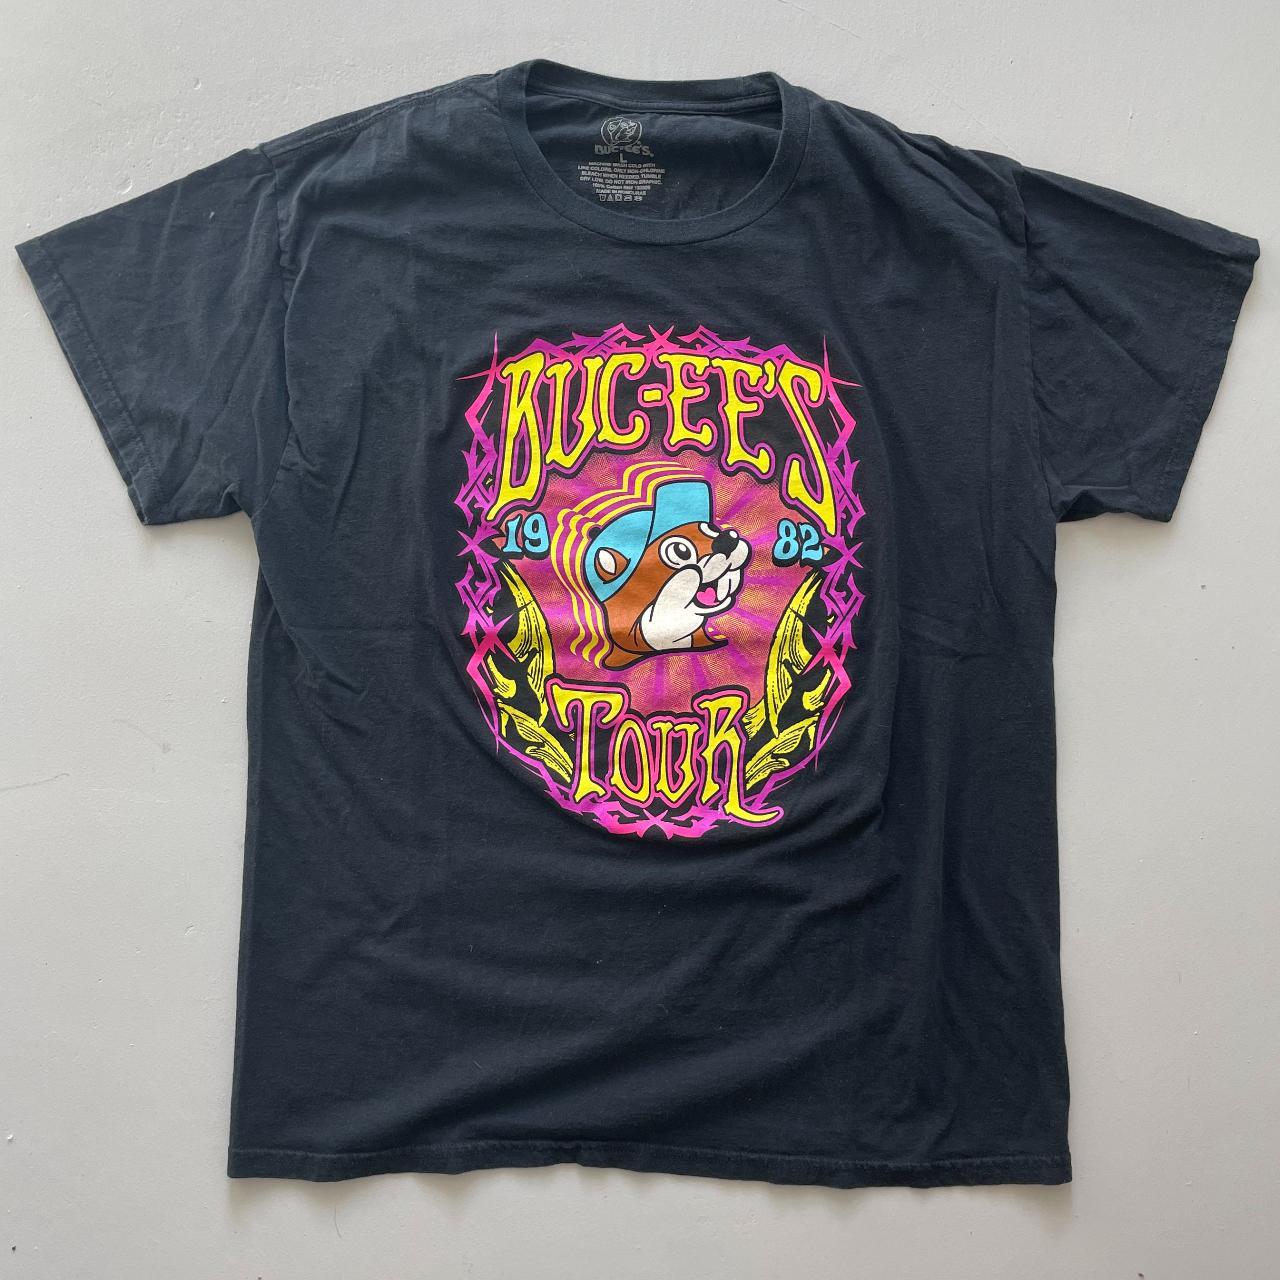 Buc-ee's 1982 Tour Black Short Sleeve T-Shirt... - Depop